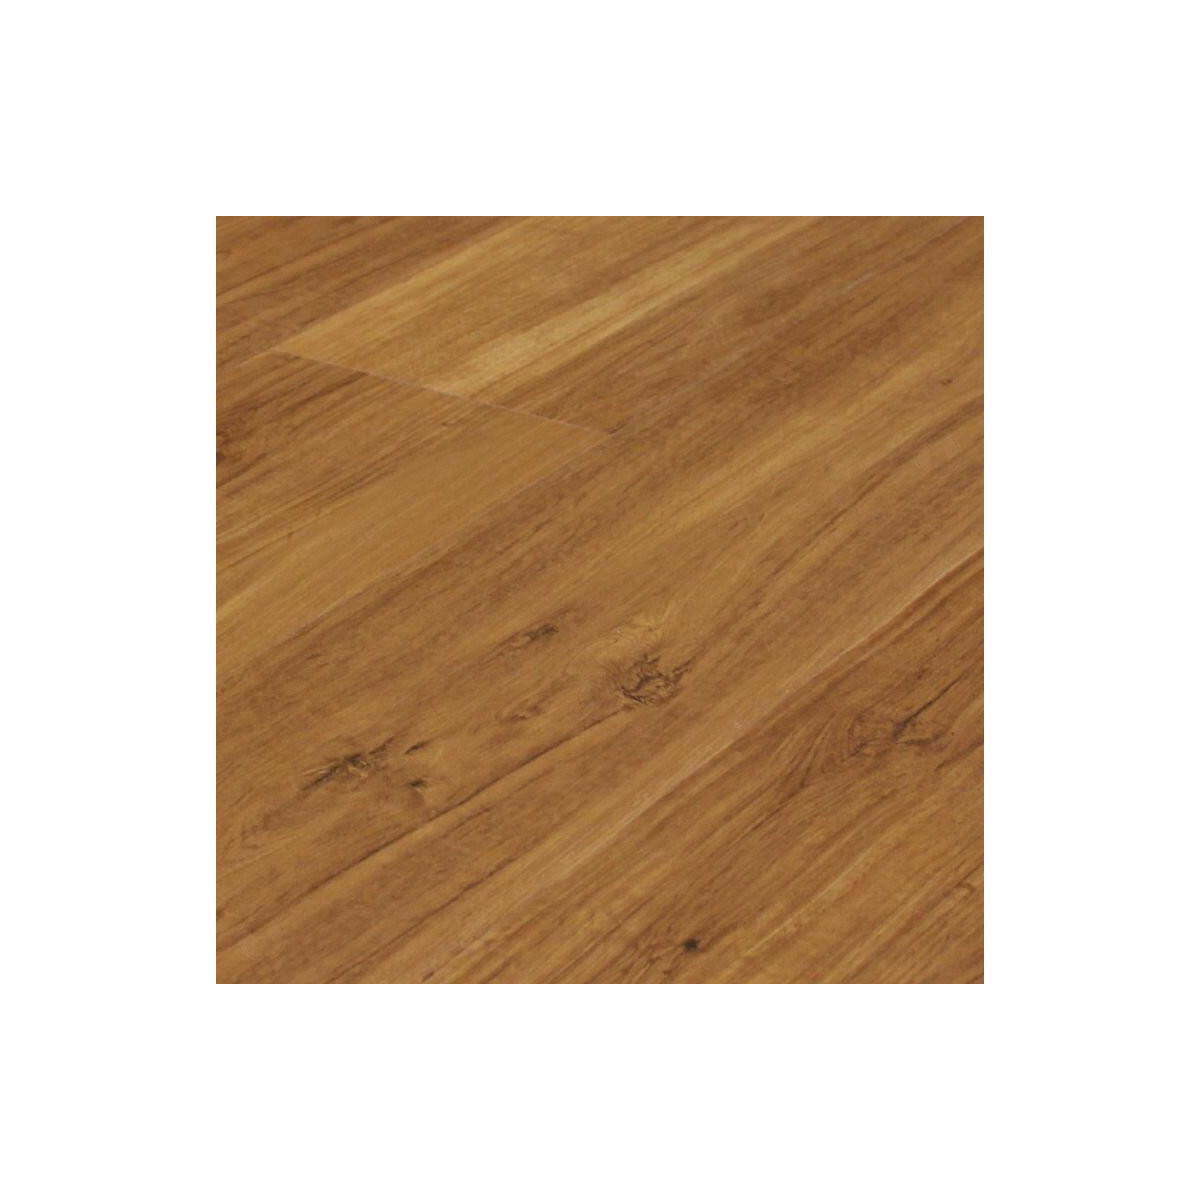 Vinylová podlaha Click Elit Rigid Wide Wood 21513 French Oak